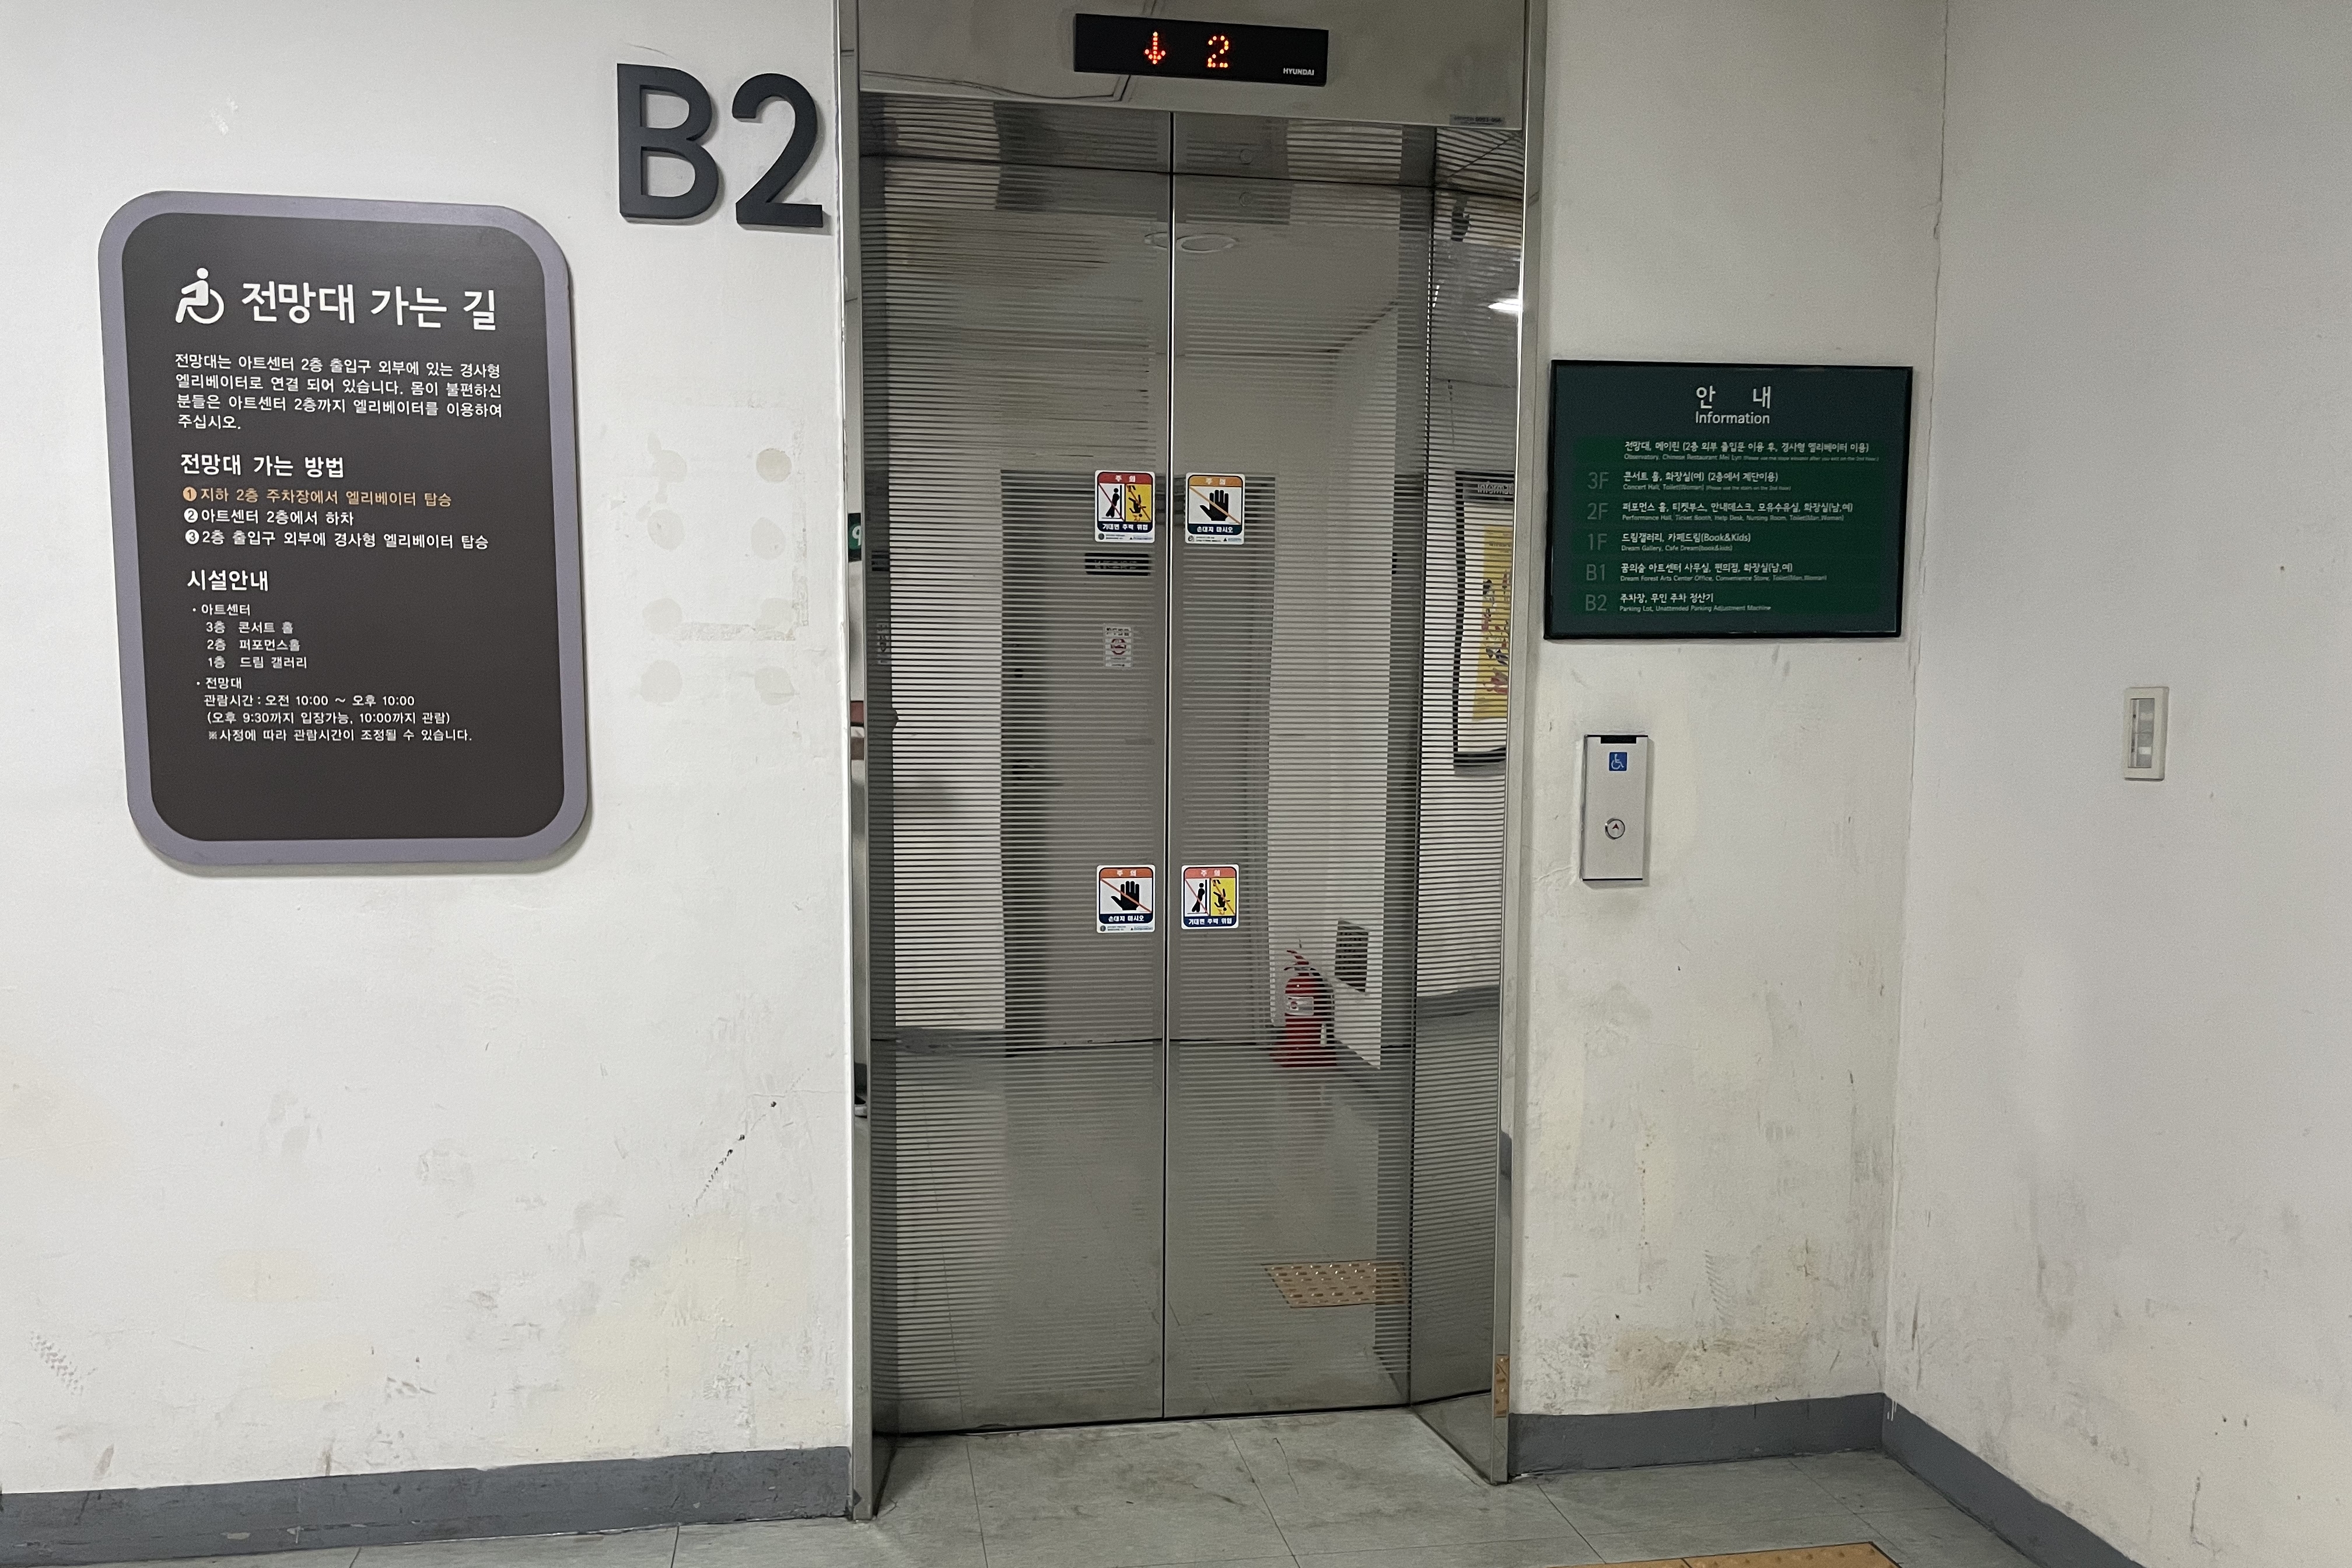 Elevator0 : Elevator with narrow doors
